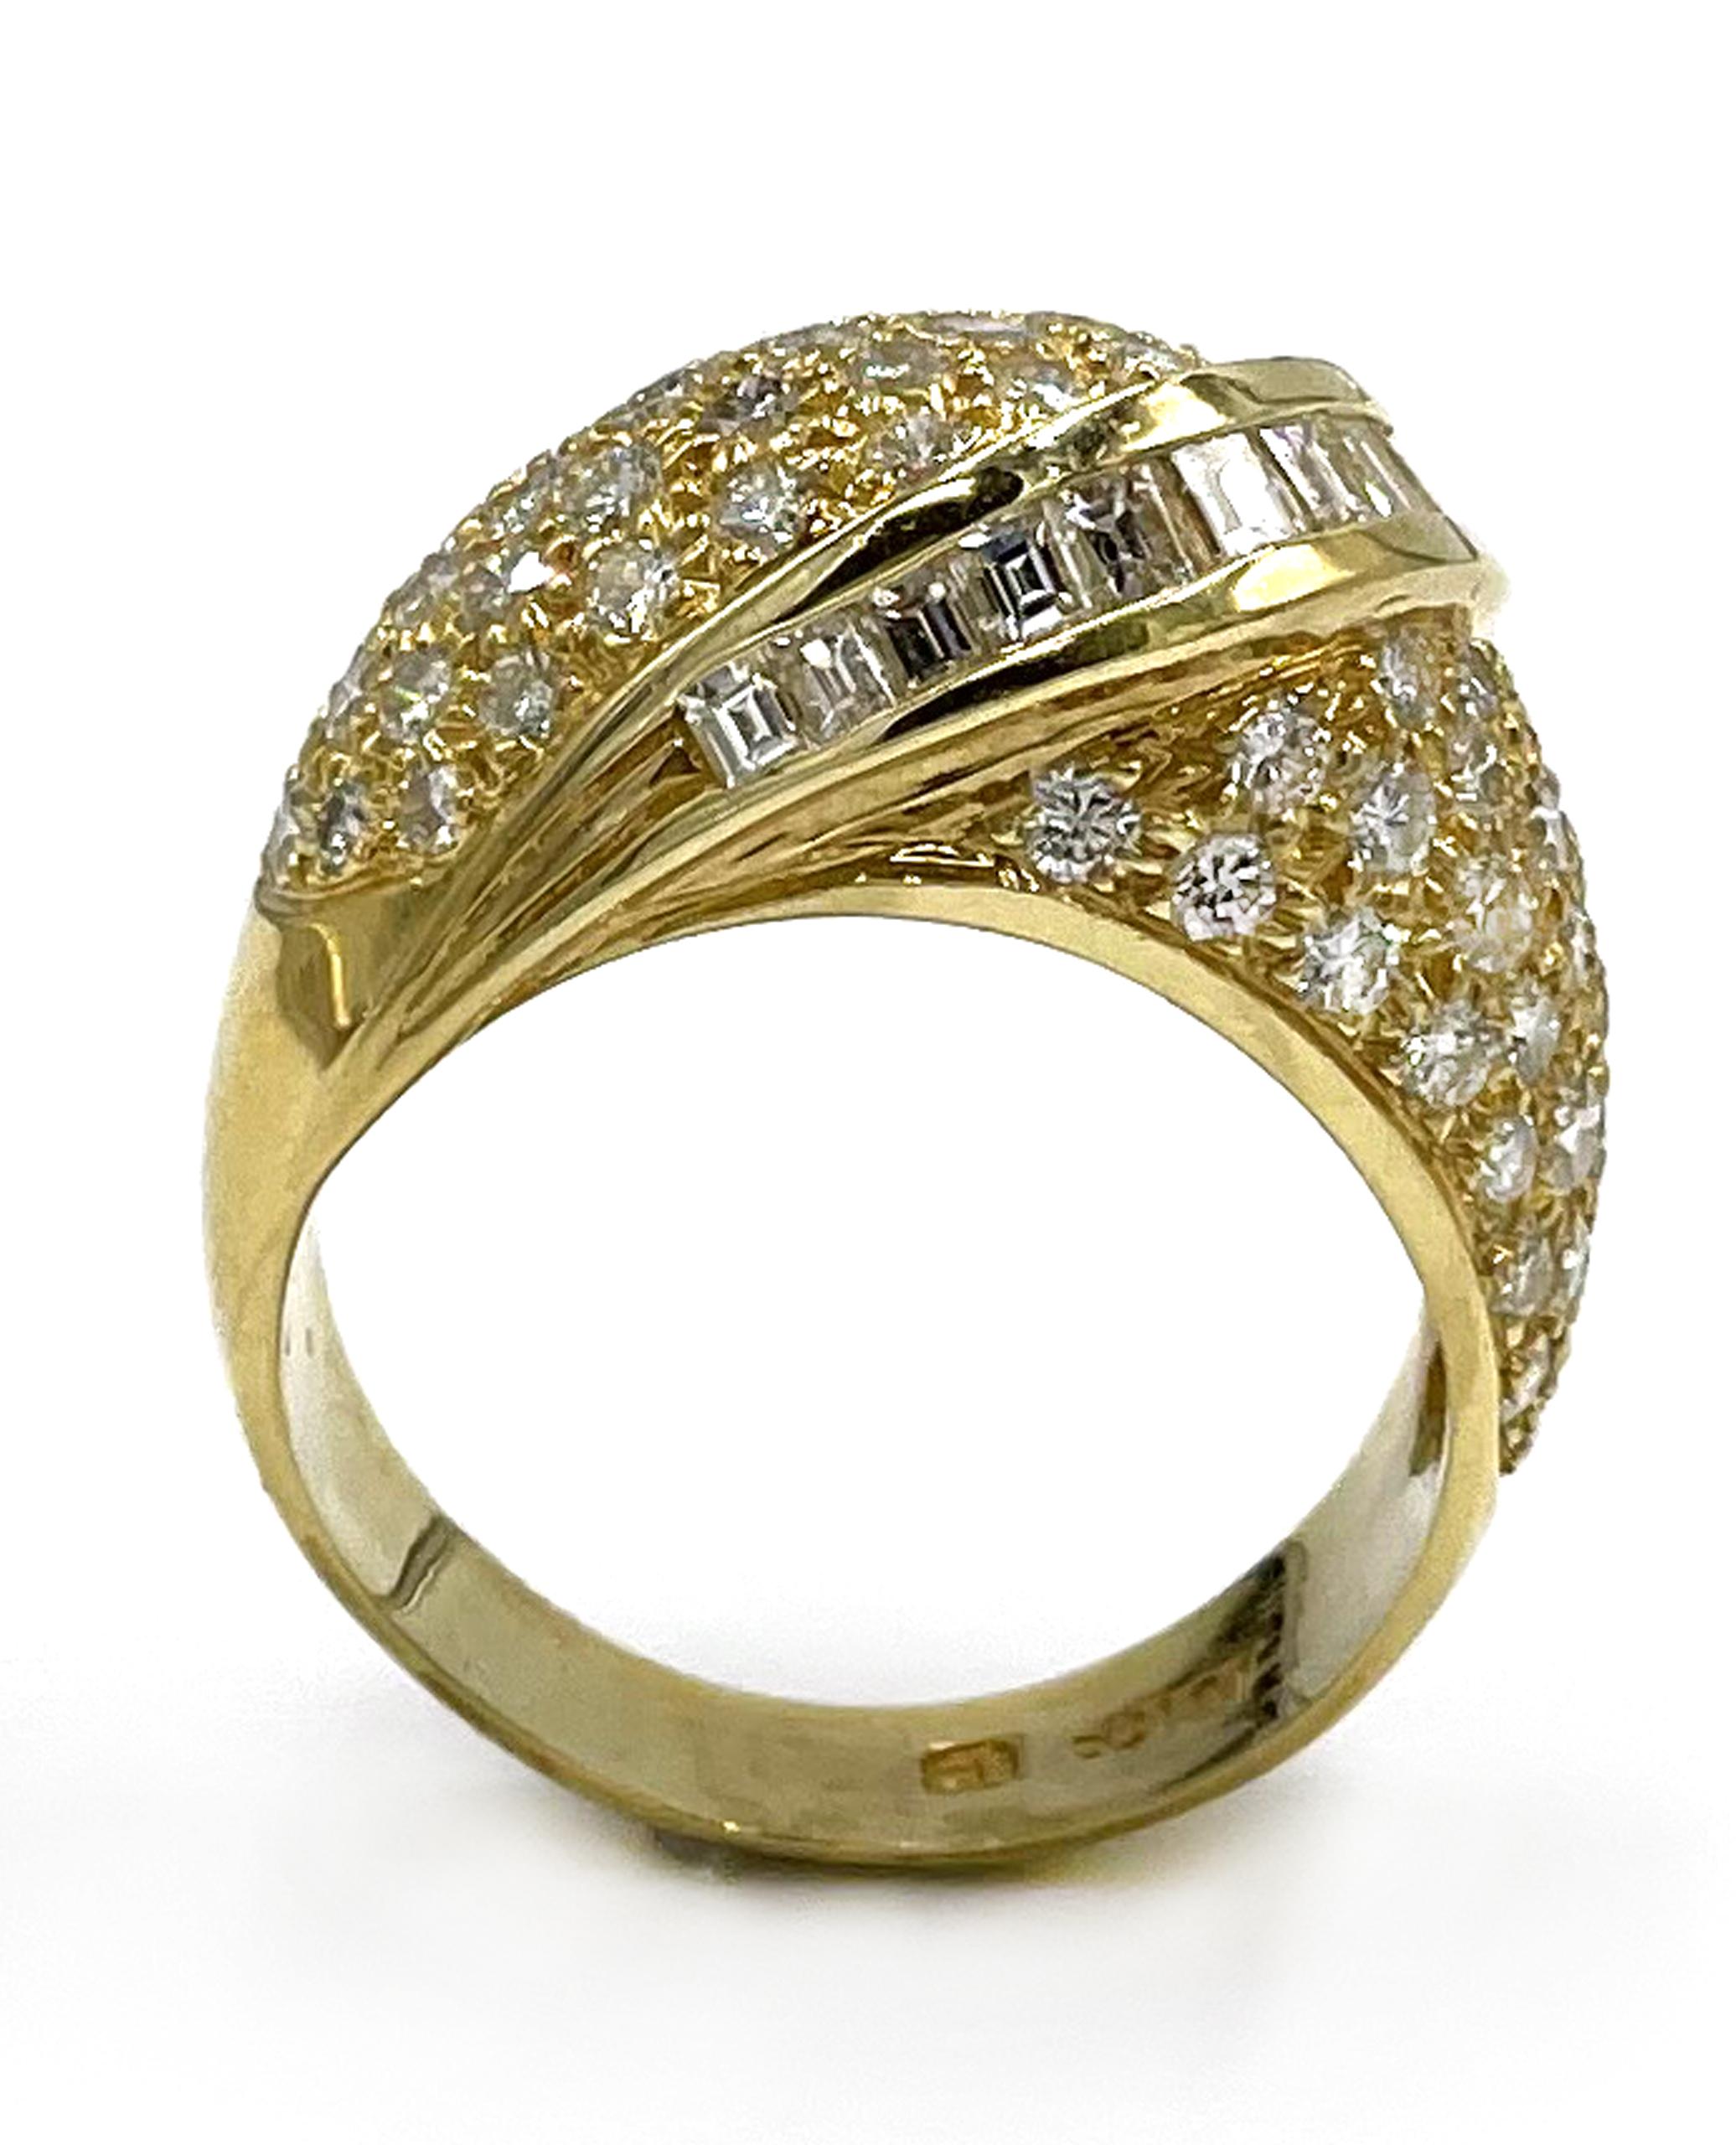 Vintage-Ring aus 18 Karat Gelbgold mit runden und Baguette-Diamanten von insgesamt 2,65 Karat. Farbe G/H, Reinheit VS. (Erstellt ca. 1985)

-Fingergröße: 6.5